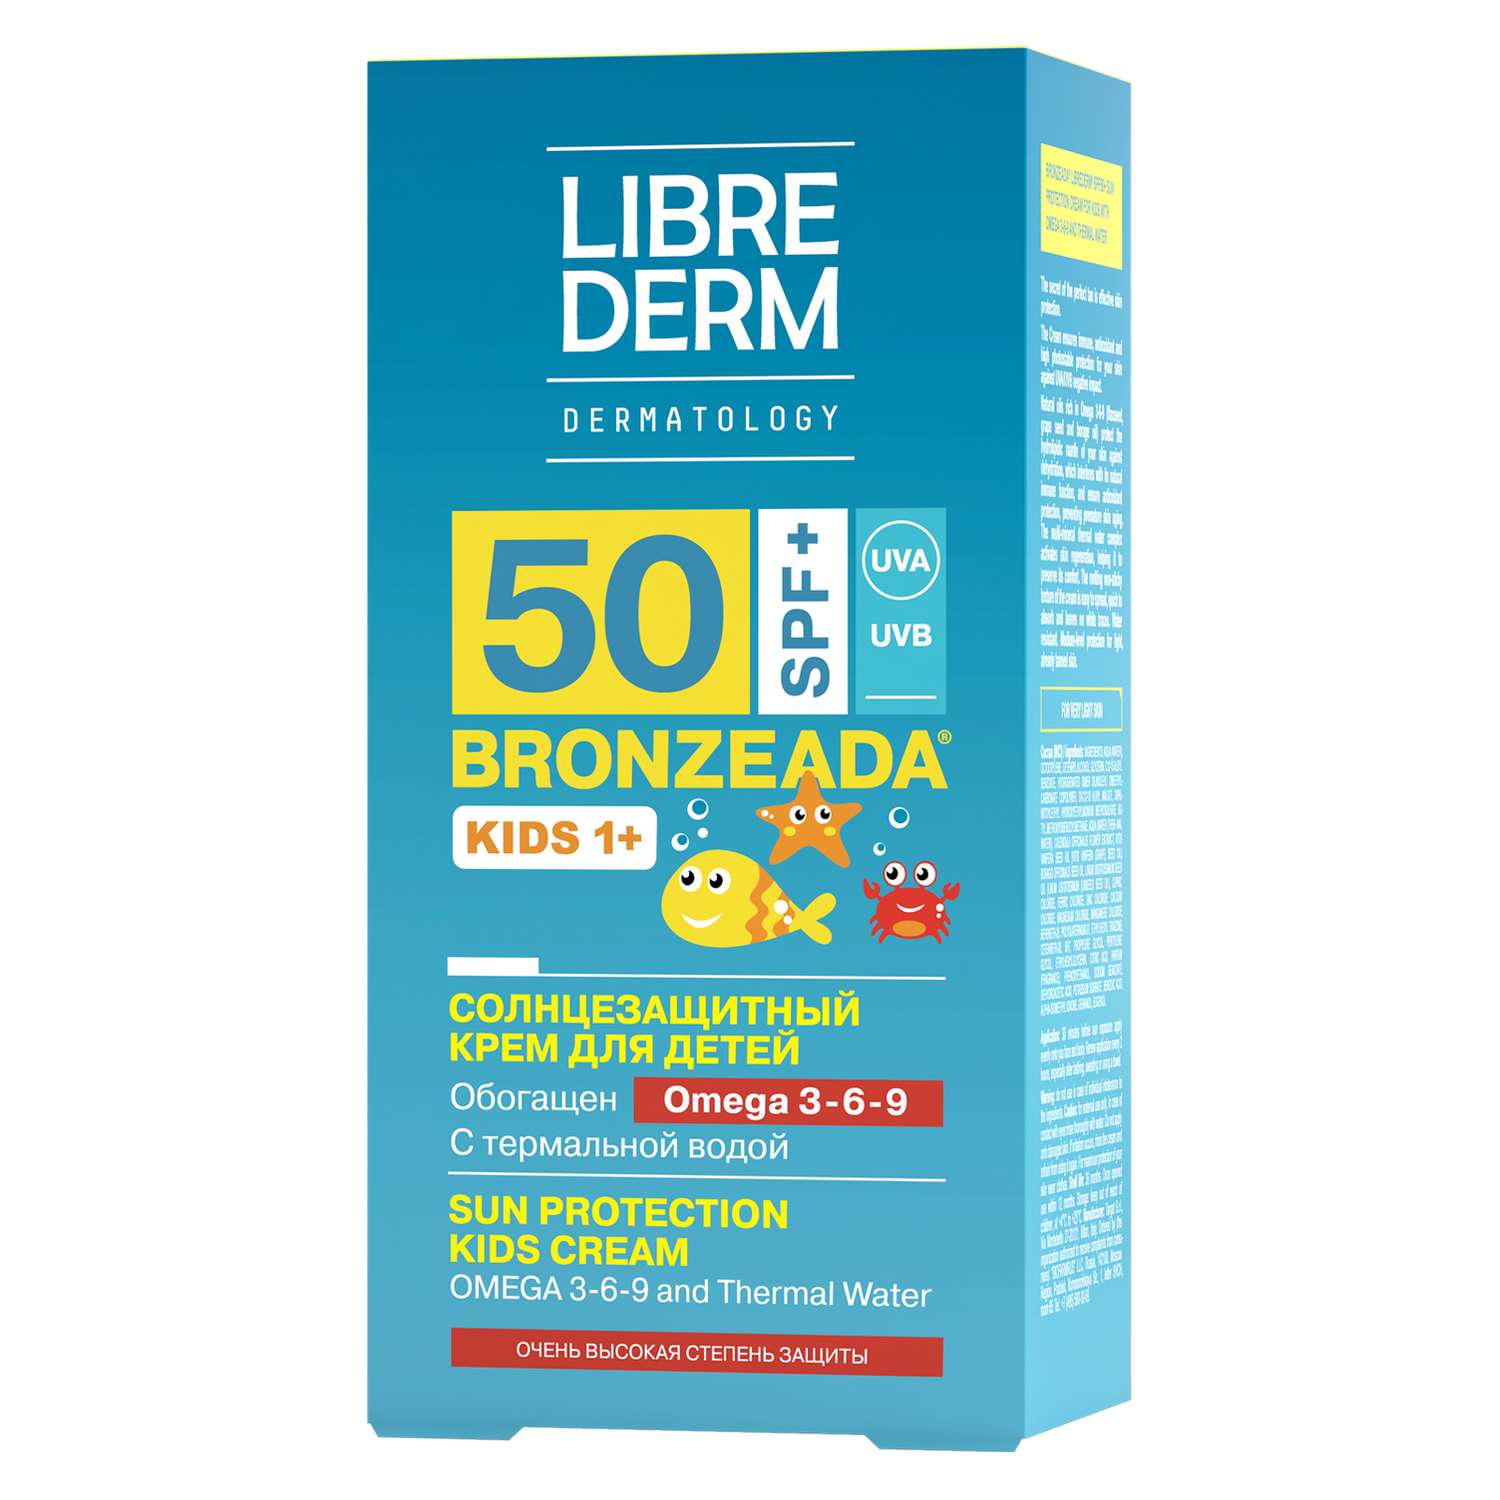 Крем солнцезащитный Librederm BRONZEADA для детей SPF50+ с Омега 3-6-9 и термальной водой - фото 11